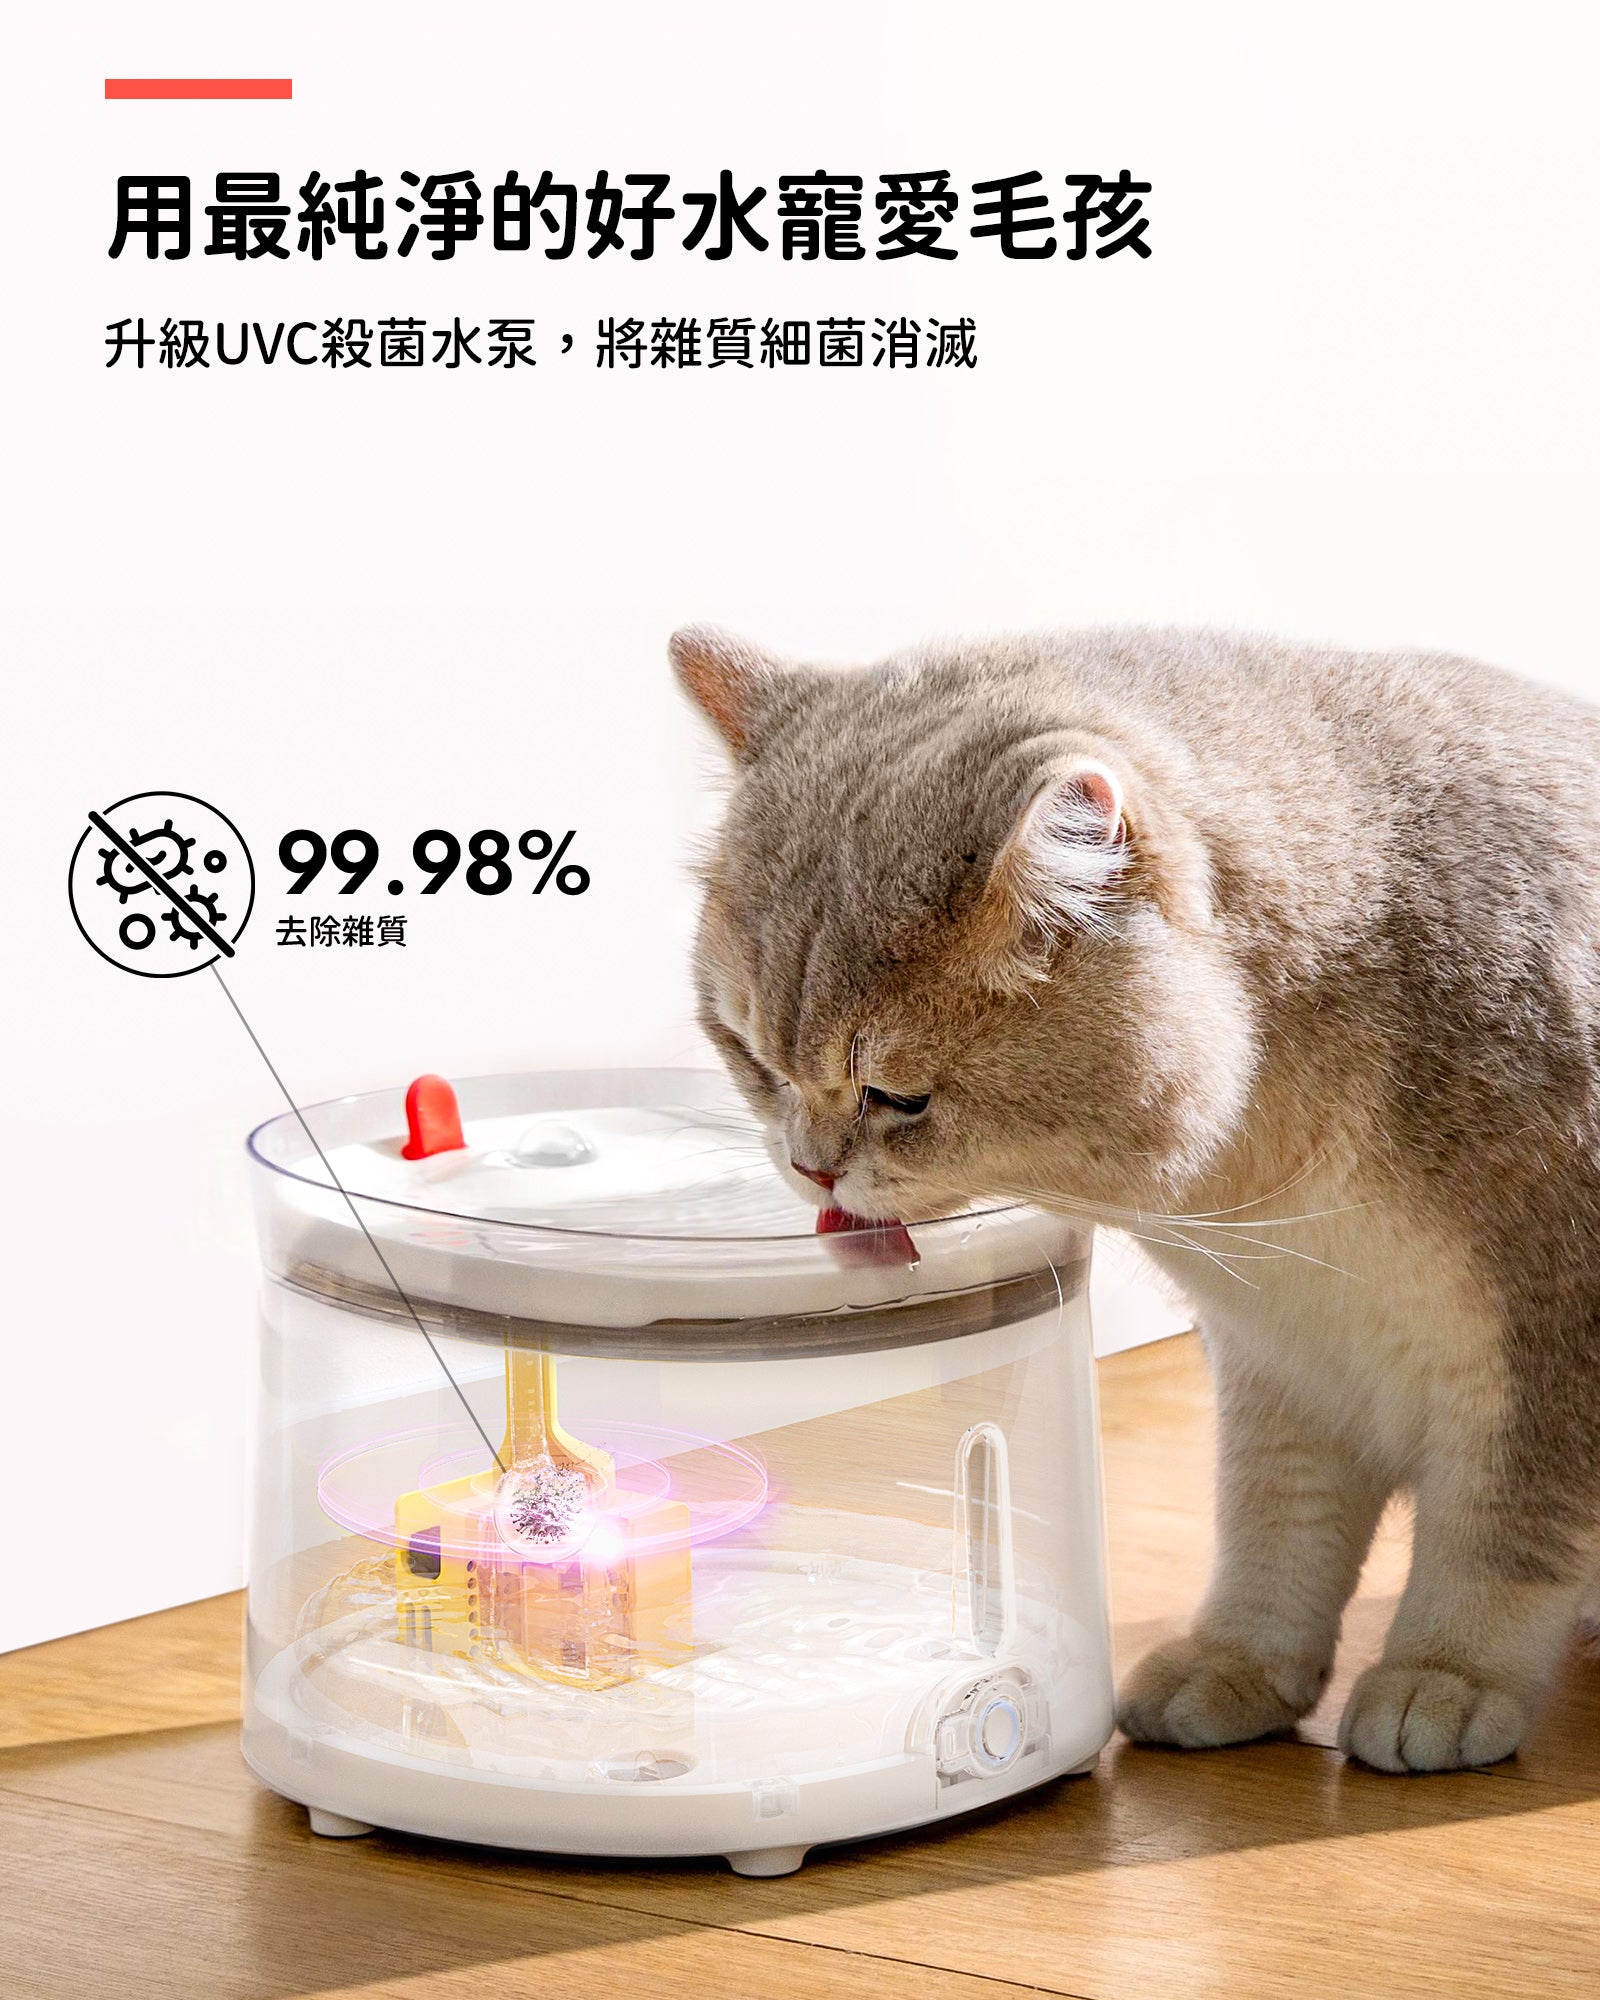 霍曼寵物殺菌飲水機 寵物飲水機 Homerunpet Taiwan   